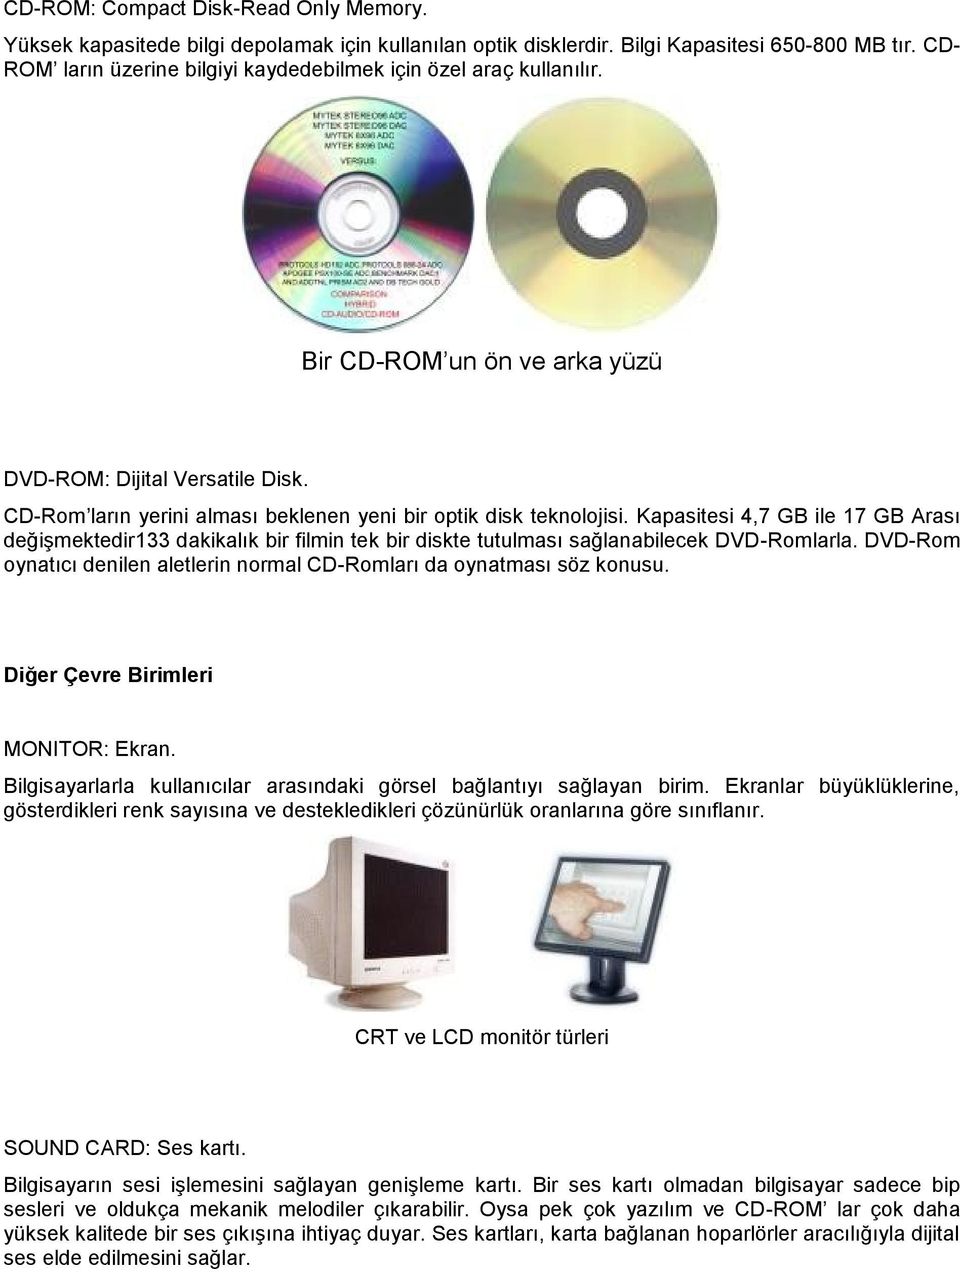 CD-Rom ların yerini alması beklenen yeni bir optik disk teknolojisi. Kapasitesi 4,7 GB ile 17 GB Arası değişmektedir133 dakikalık bir filmin tek bir diskte tutulması sağlanabilecek DVD-Romlarla.